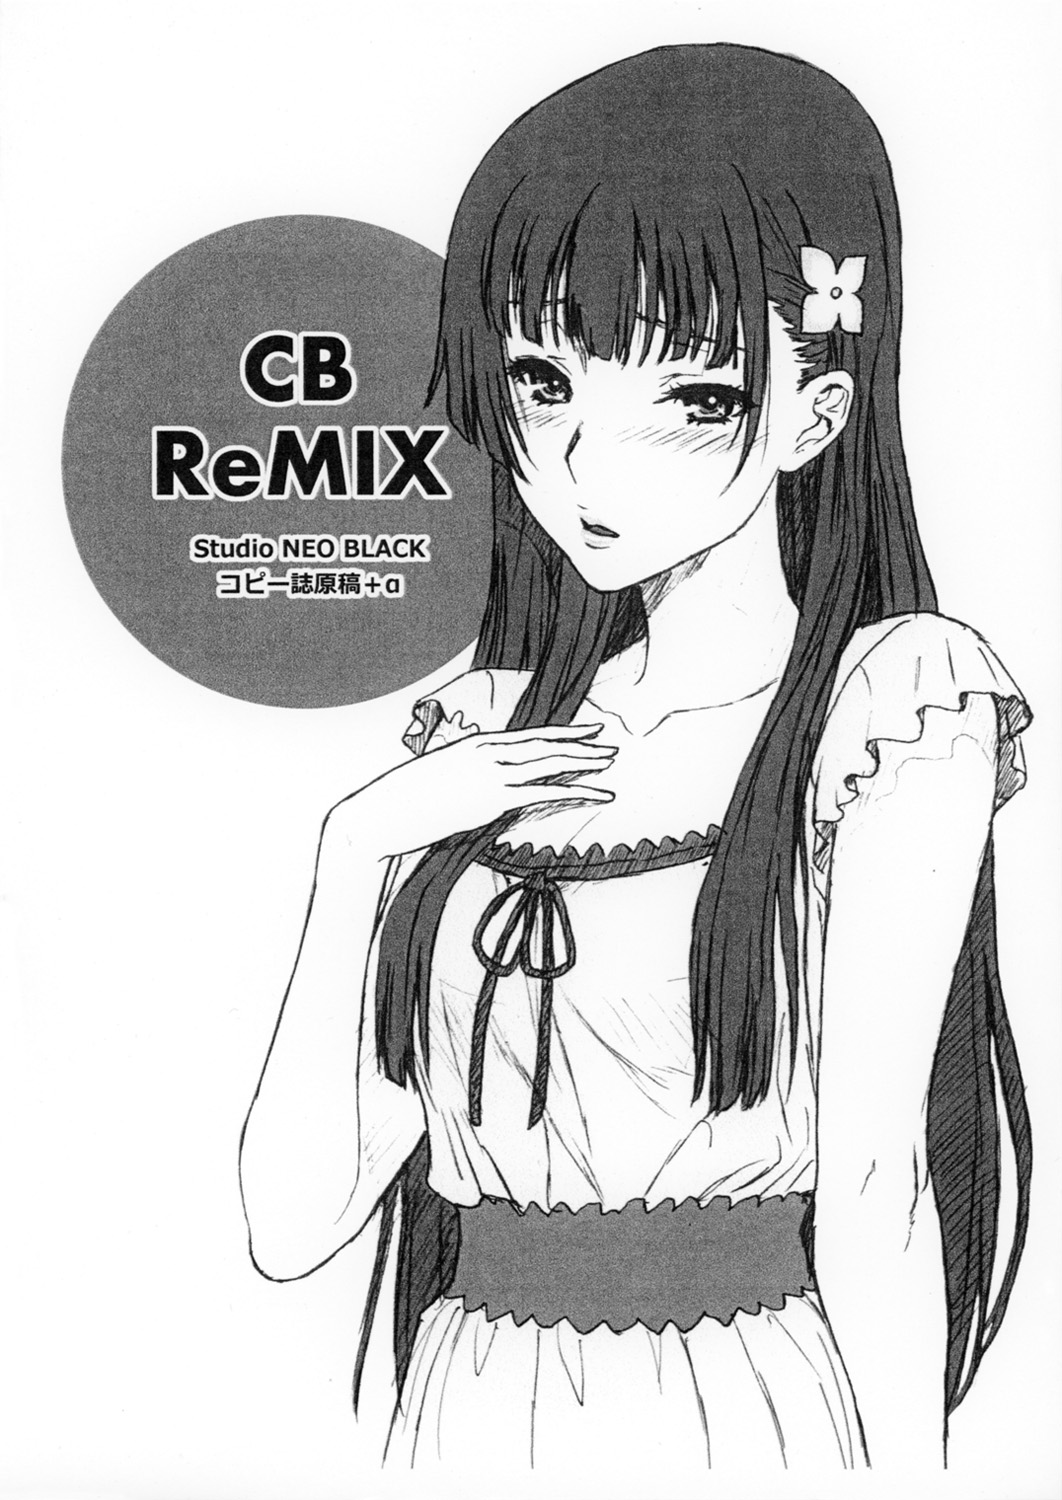 (SC57) [Studio NEO BLACK (NEO BLACK)] CB ReMIX ver2.0 (Various) (サンクリ57) [Studio NEO BLACK (NEO BLACK)] CB ReMIX ver2.0 (よろず)